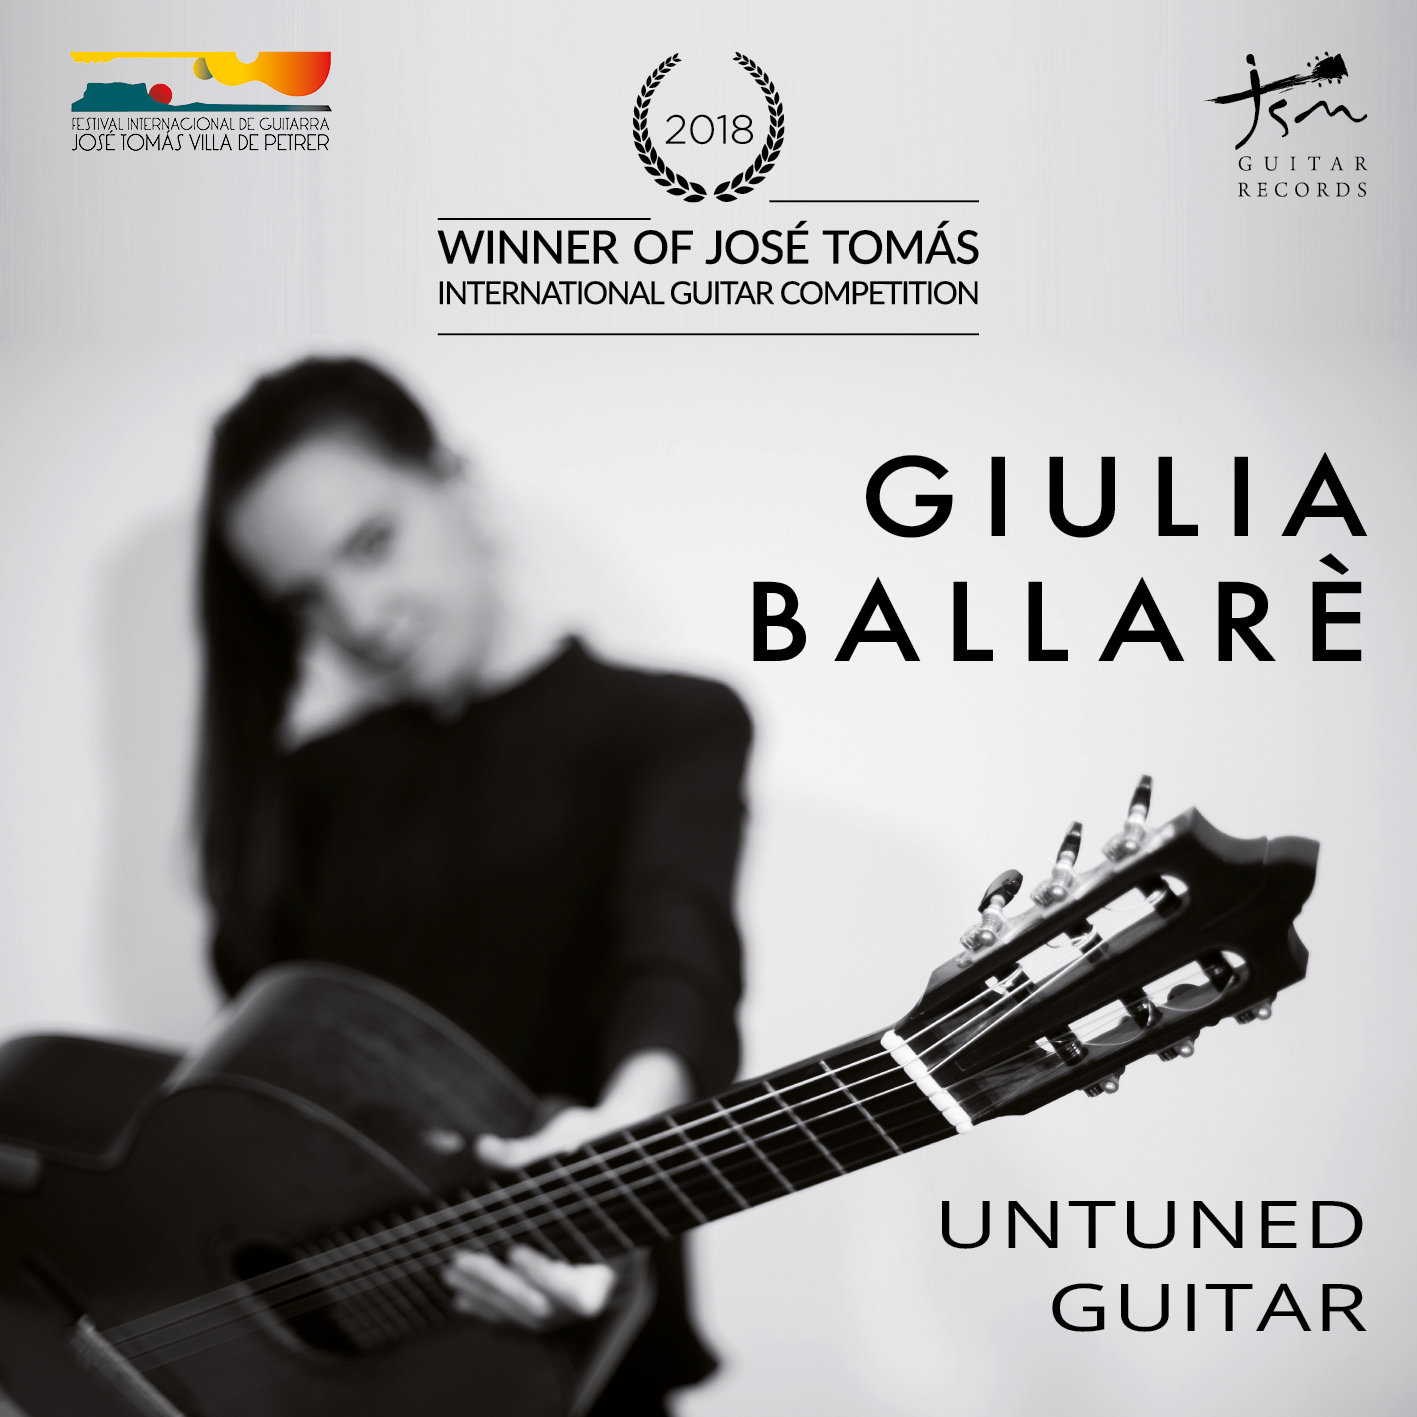 Untuned Guitar, Giulia Ballarè